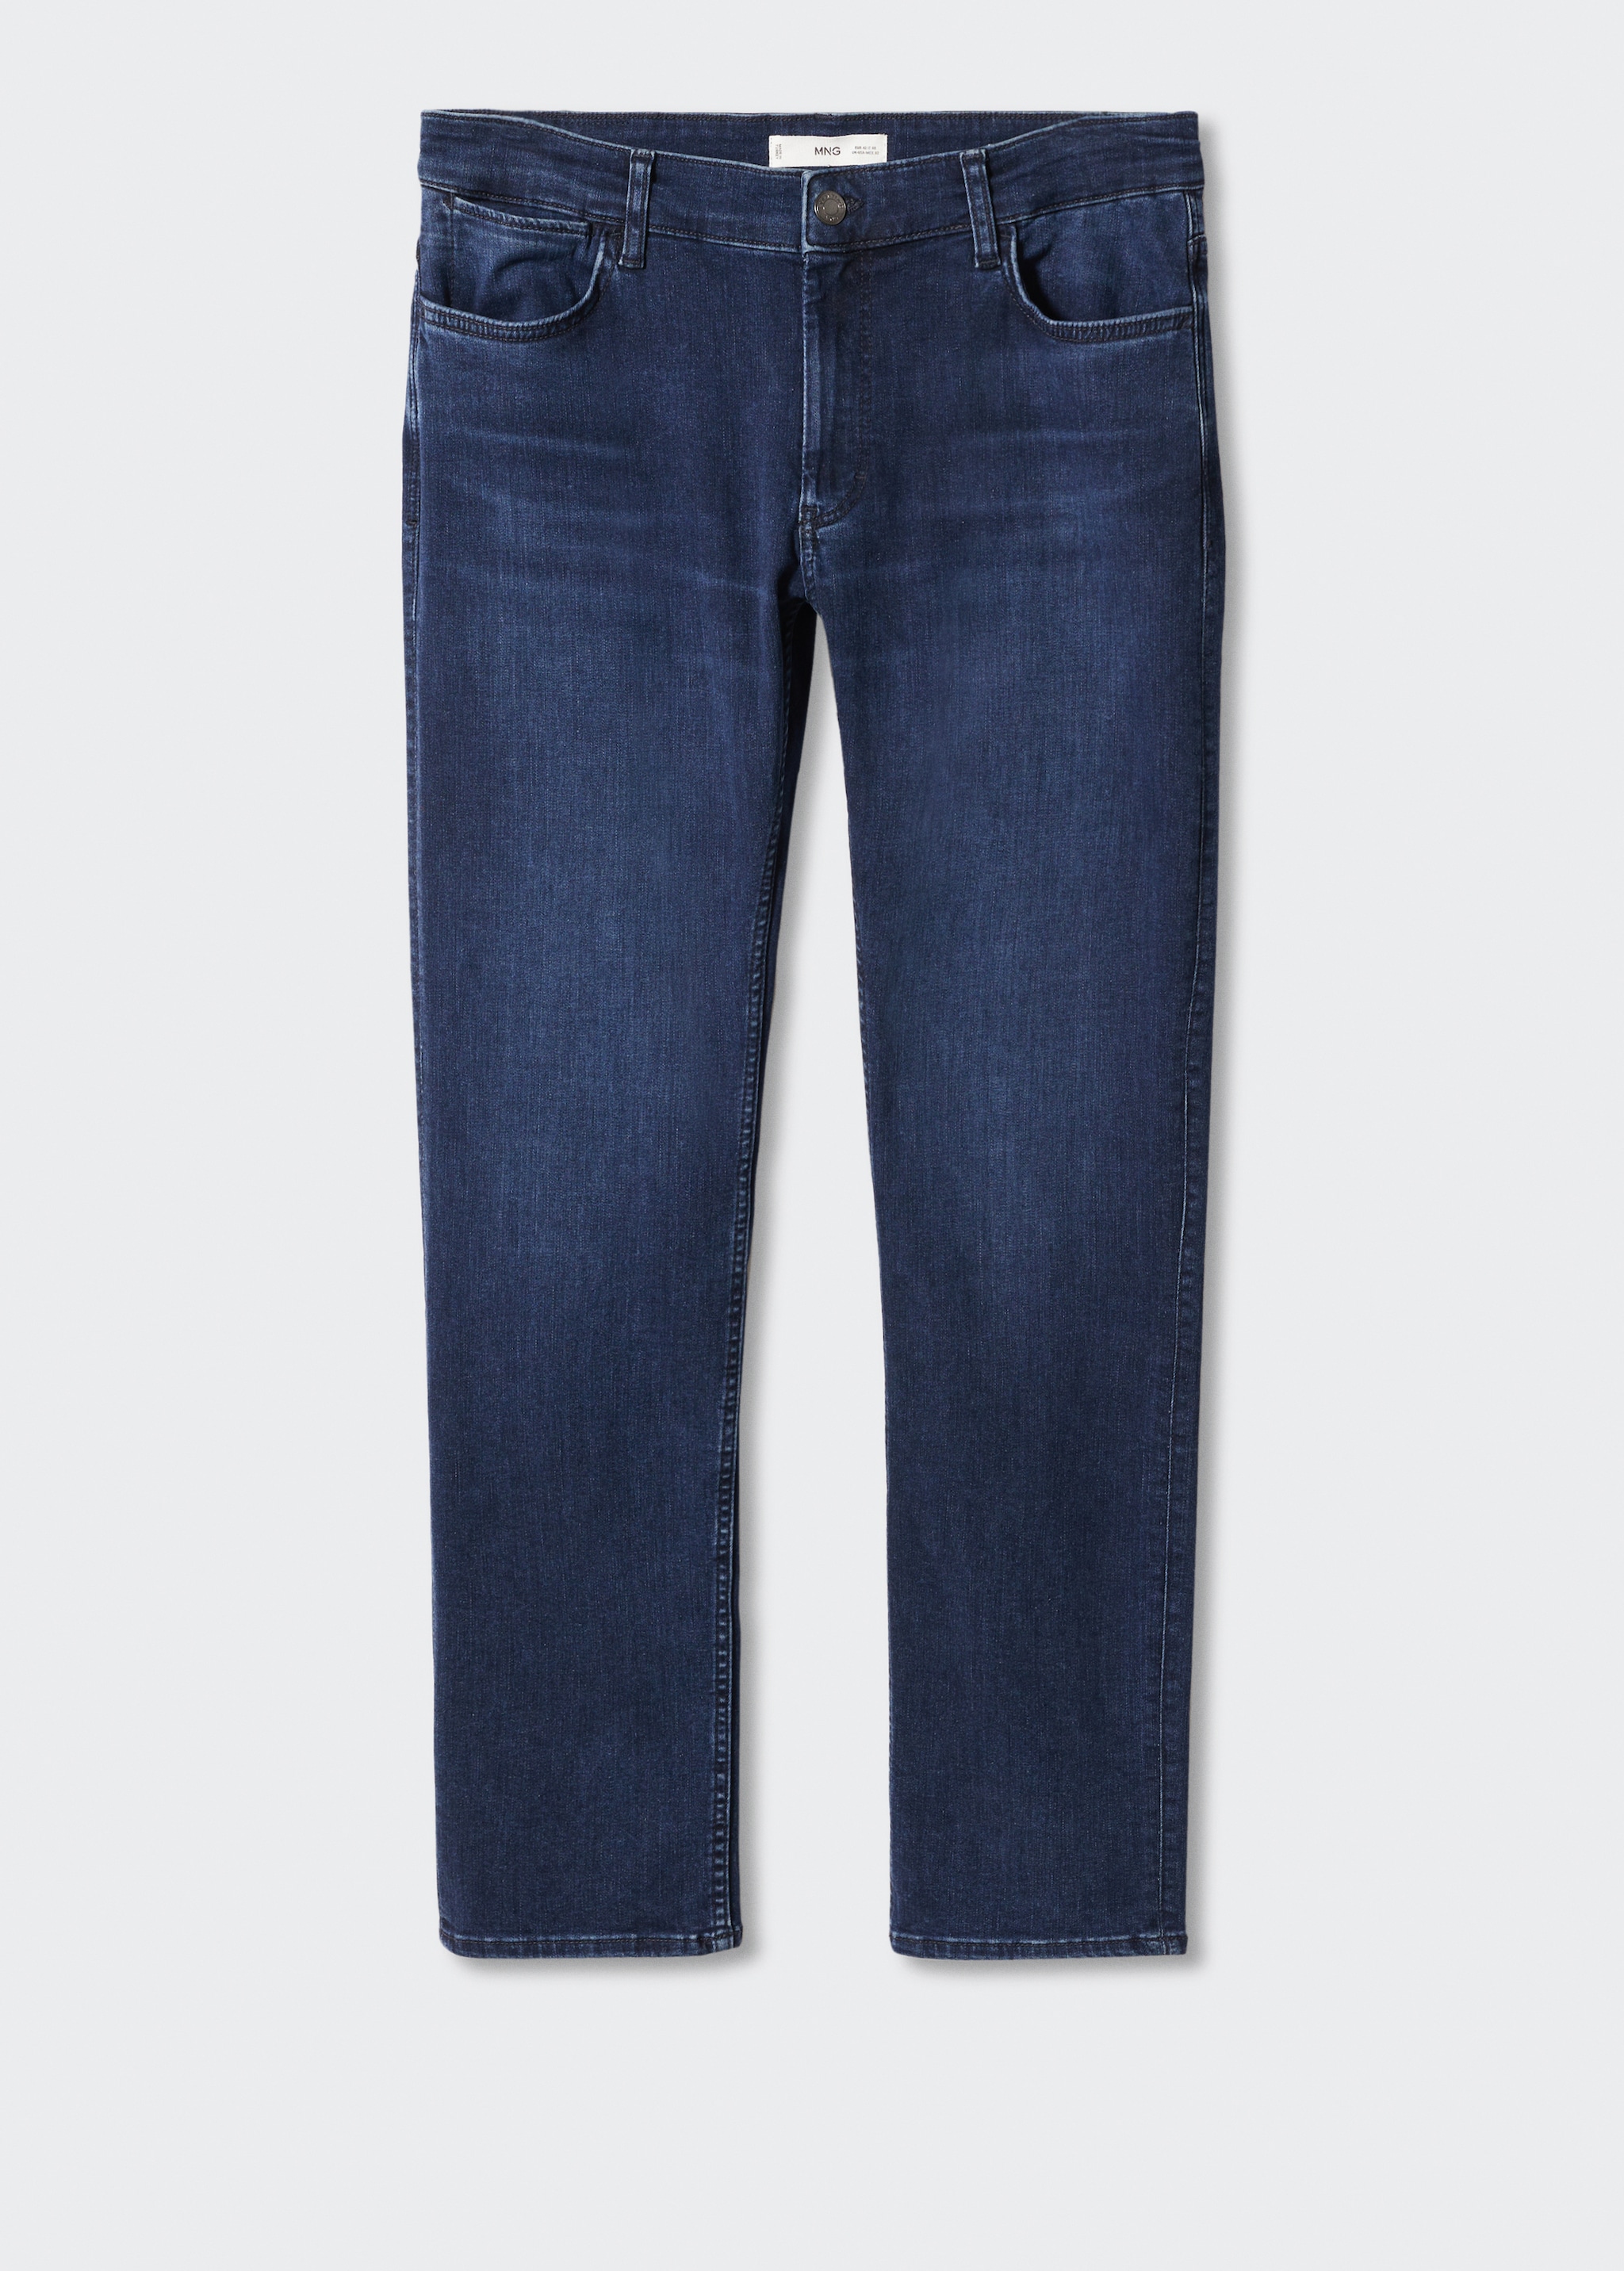 Jeans Patrick slim fit Ultra Soft Touch - Artículo sin modelo